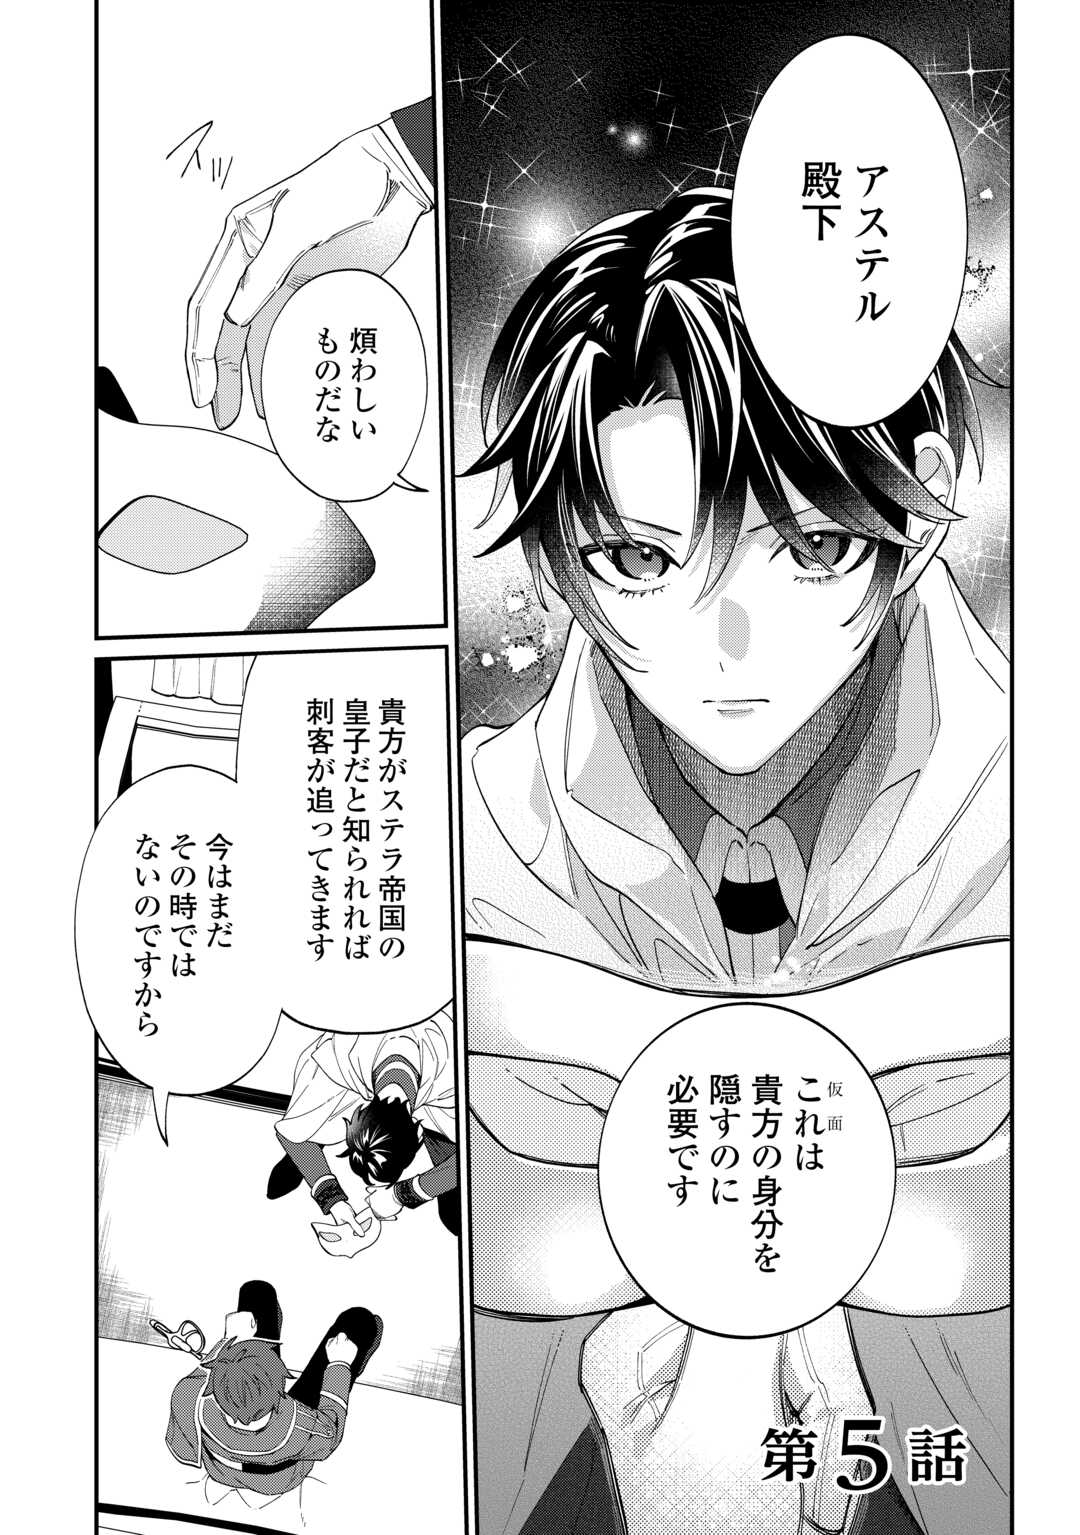 Watashi ga Shinde Manzoku desu ka? - Chapter 5 - Page 1